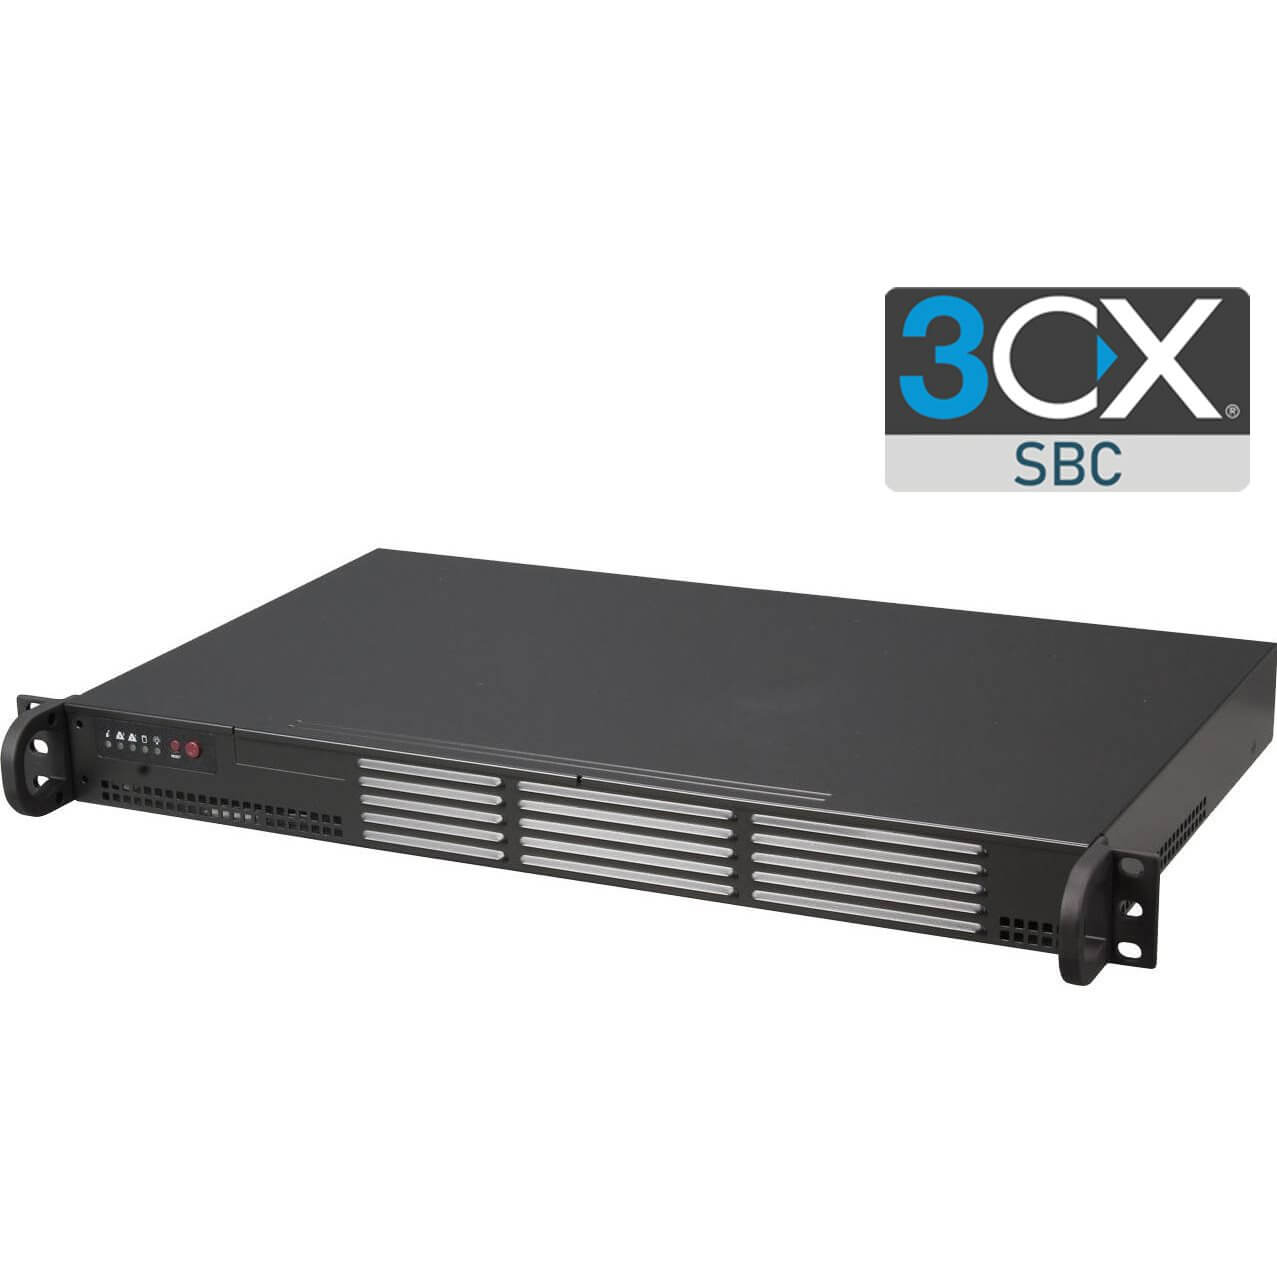 SBC 3CX 19 pr-install jusqu' 30 devices CX-SERVR-SBC